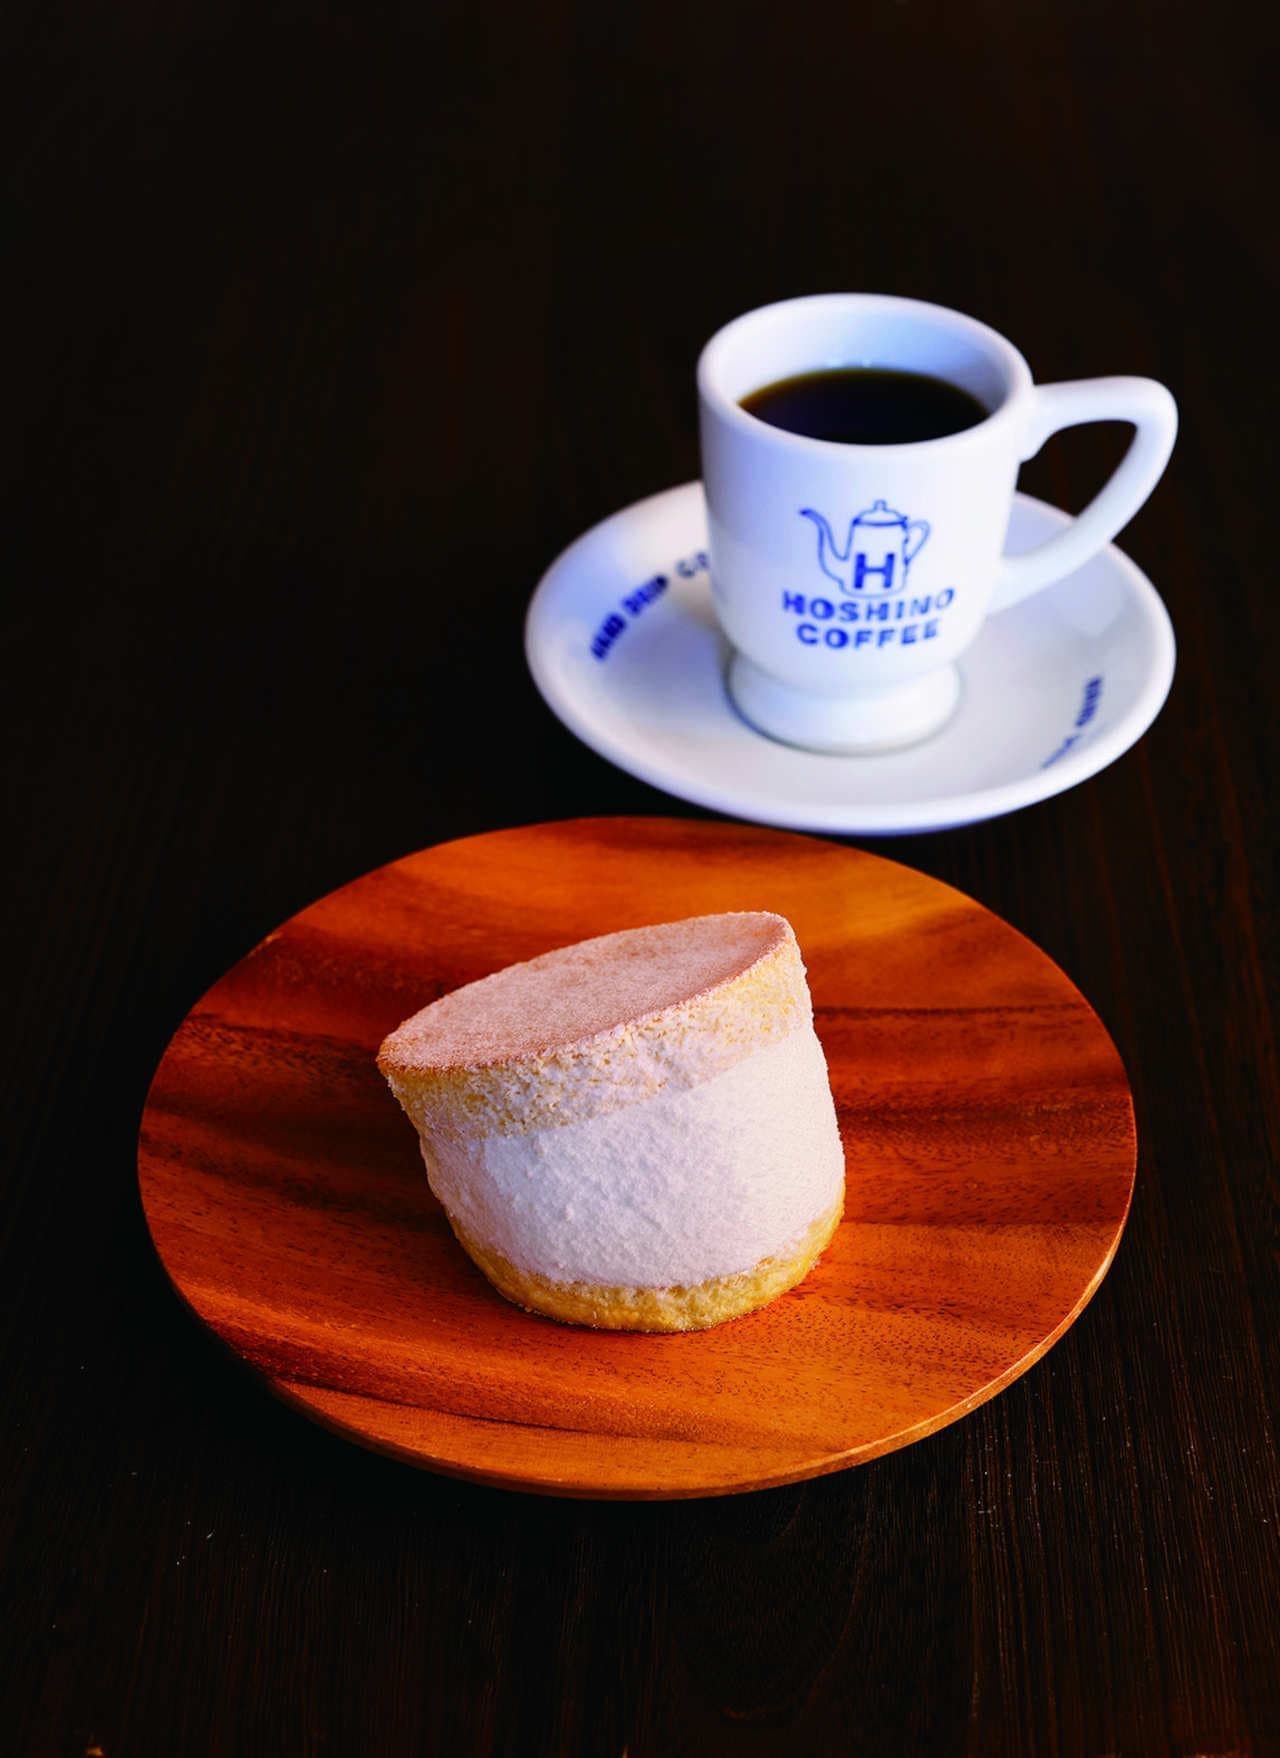 Hoshino Coffee Shop "Tappu Rich Pancake